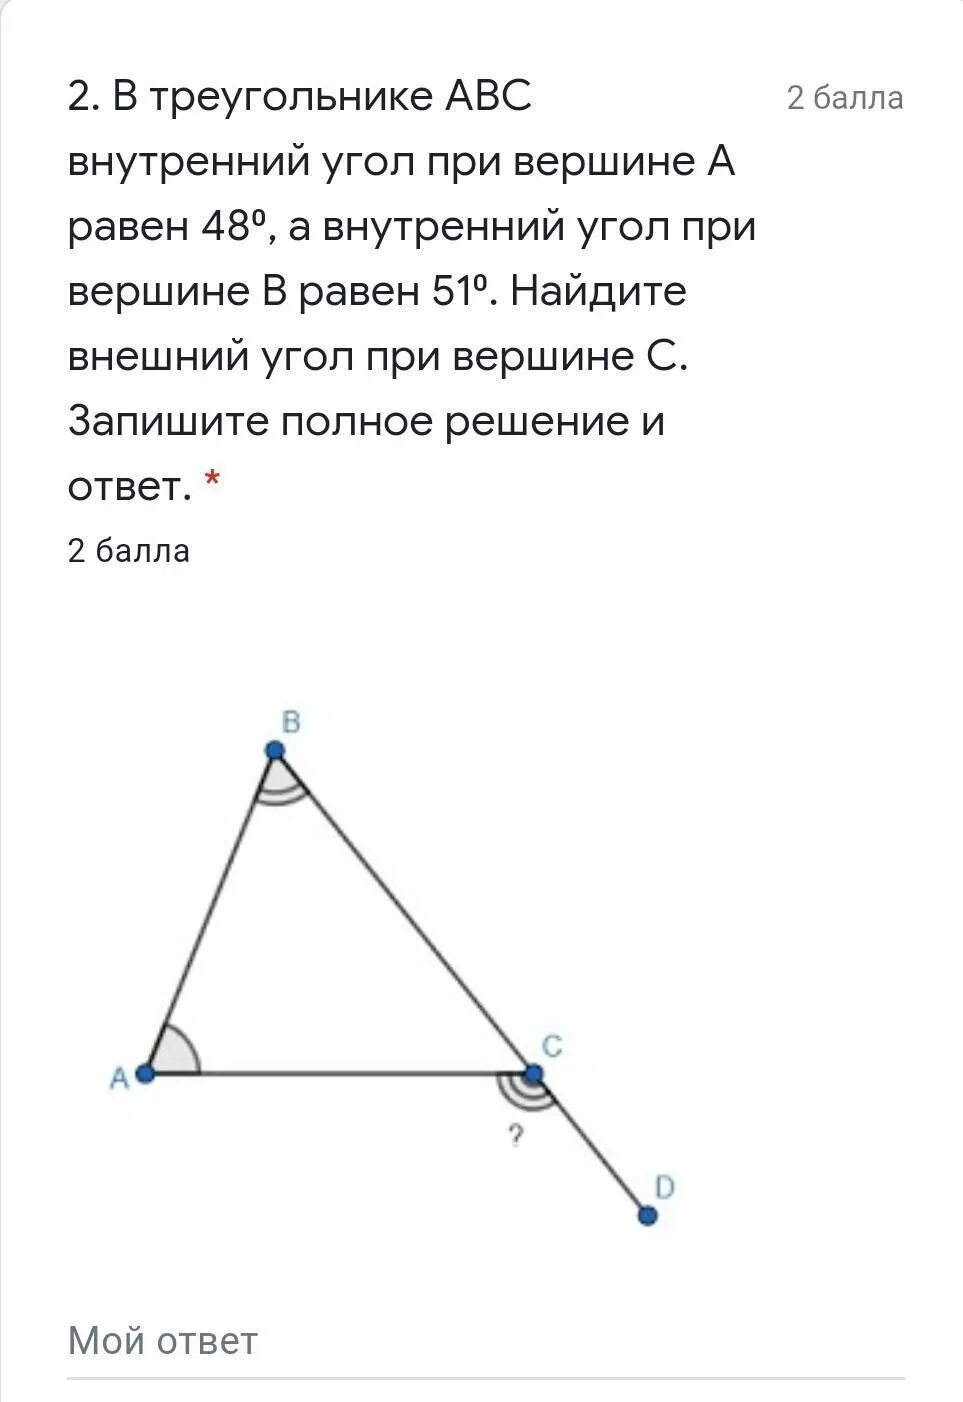 Найдите внешний угол при вершине с ответ. Внешний угол при вершине. Внешний угол при вершине треугольника. Угол при вершине треугольника. Внутренние углы треугольника ABC.